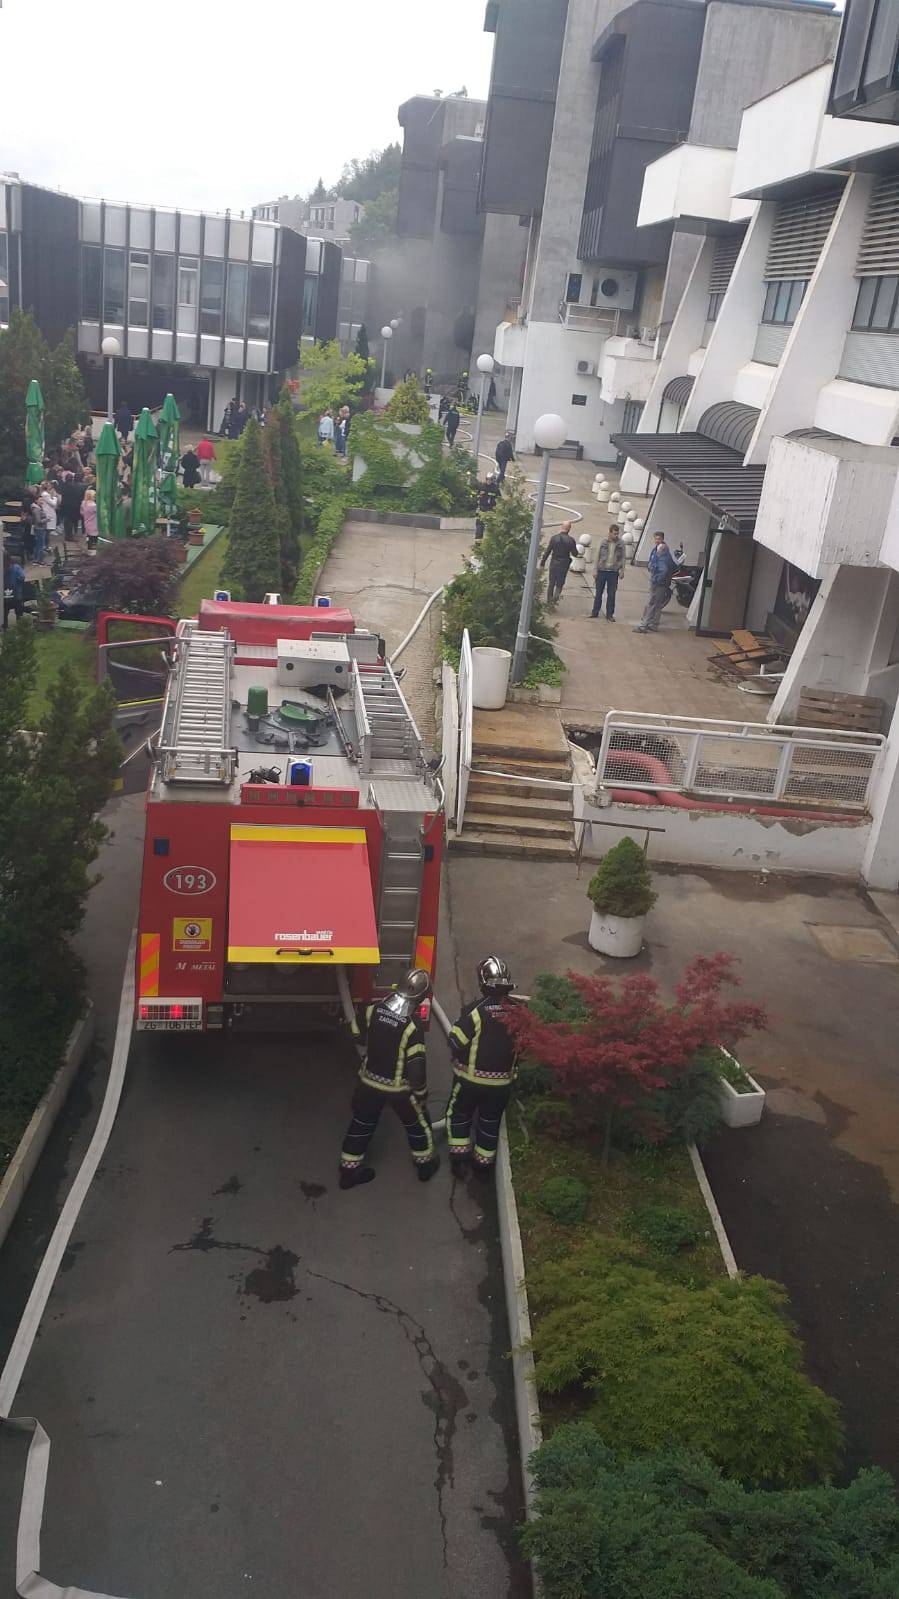 Gorjelo veleučilište na Ksaveru: Požar ugasili u nekoliko minuta